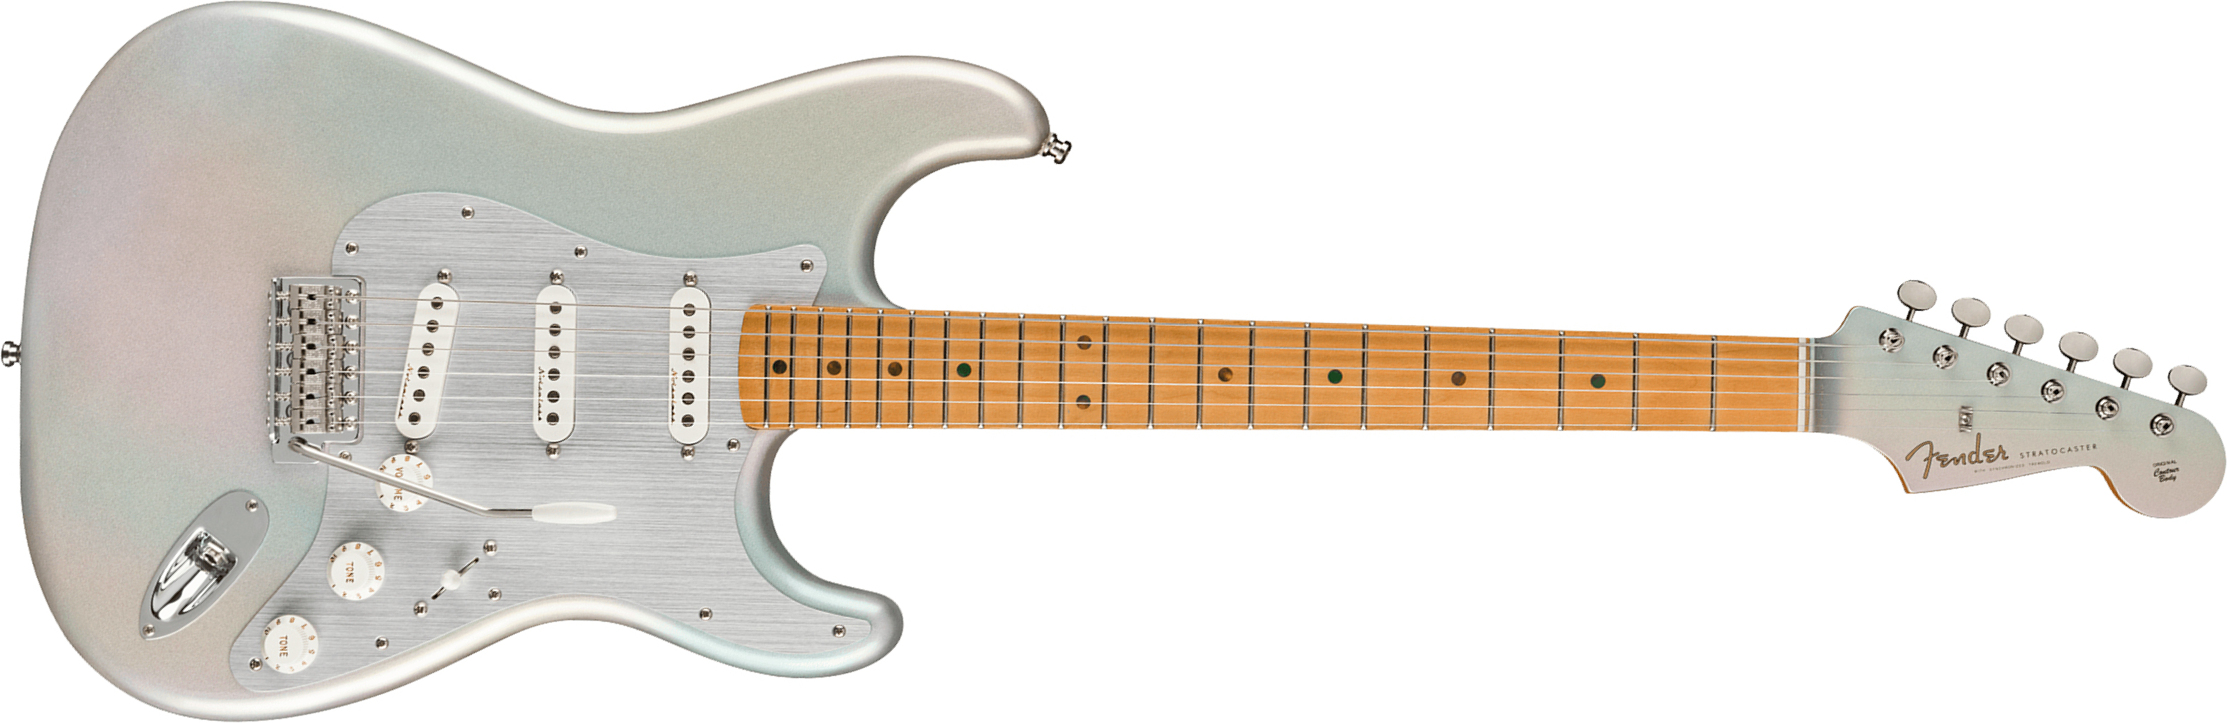 Fender H.e.r. Strat Signature Mex 3s Trem Mn - Chrome Glow - Guitare Électrique Forme Str - Main picture